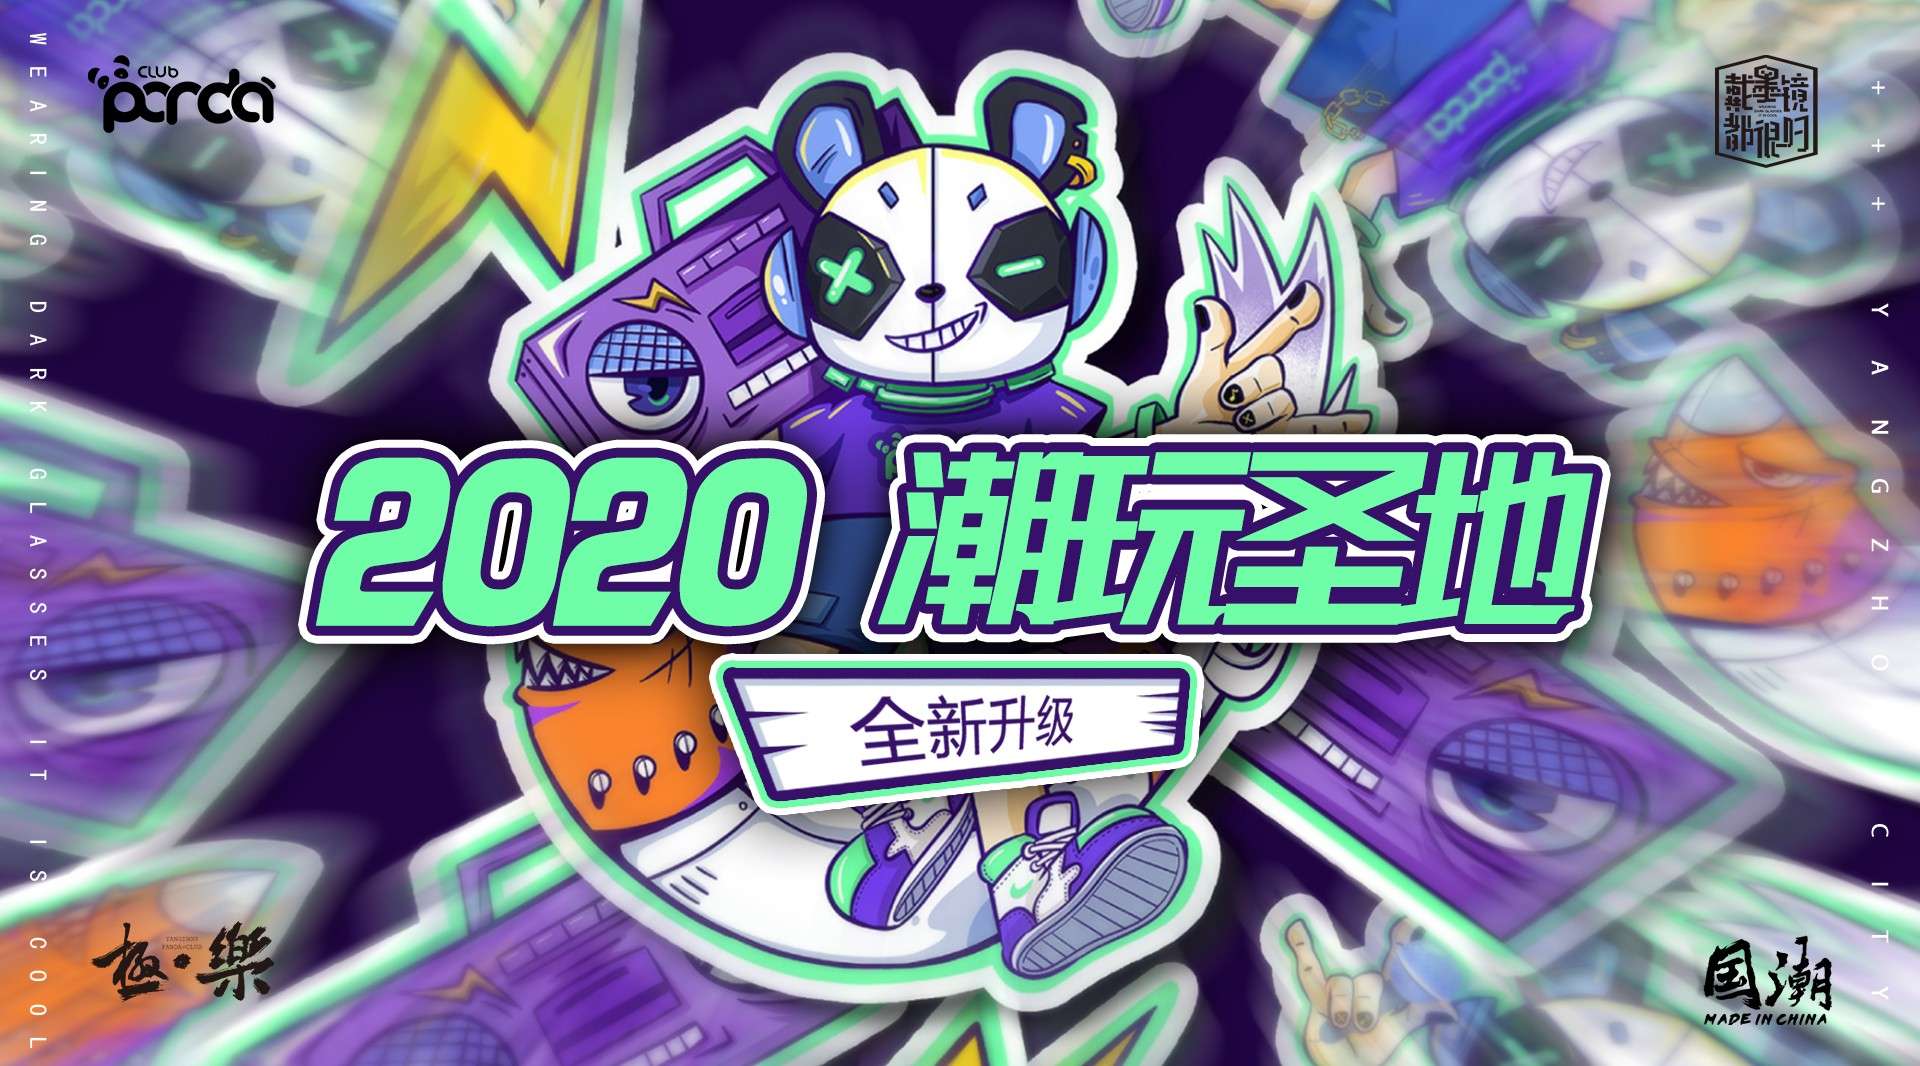 # 揚州 · 潮玩聖地 # 2020 - CHINA × MR.PANDA ！